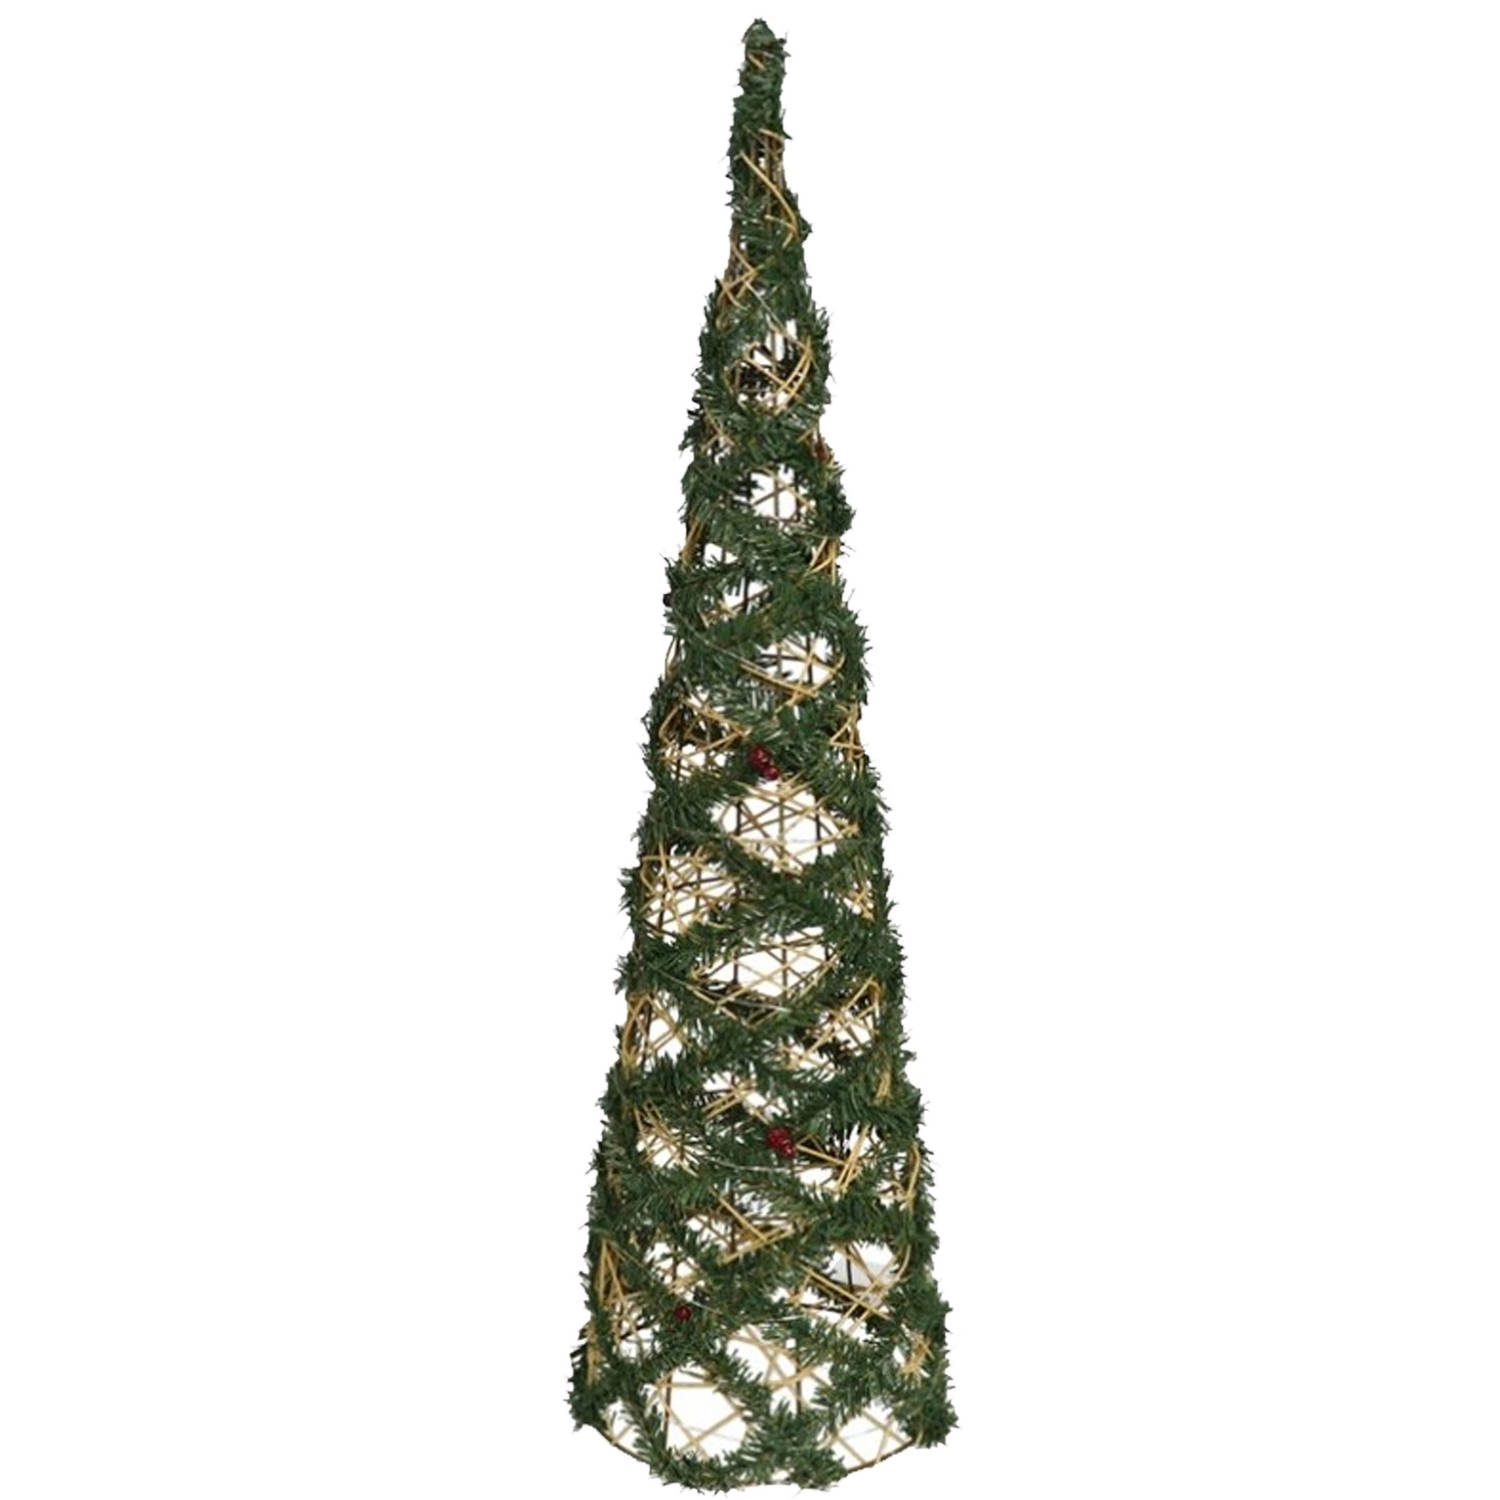 Gerim Kerstverlichting figuren - Led kegel - draad/groen - 78 cm - 60 warm witte lampjes